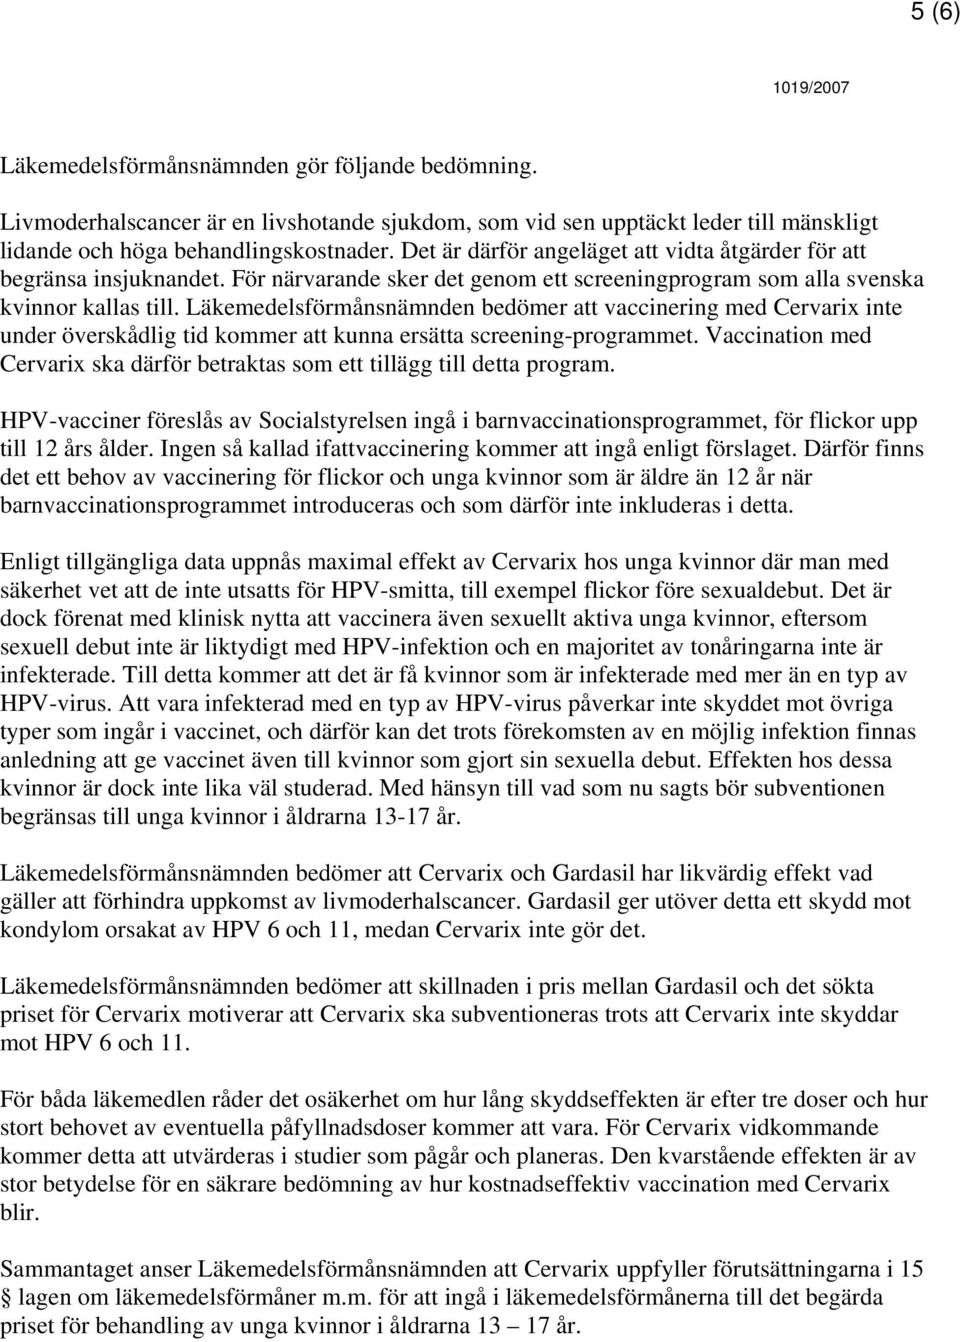 Läkemedelsförmånsnämnden bedömer att vaccinering med Cervarix inte under överskådlig tid kommer att kunna ersätta screening-programmet.